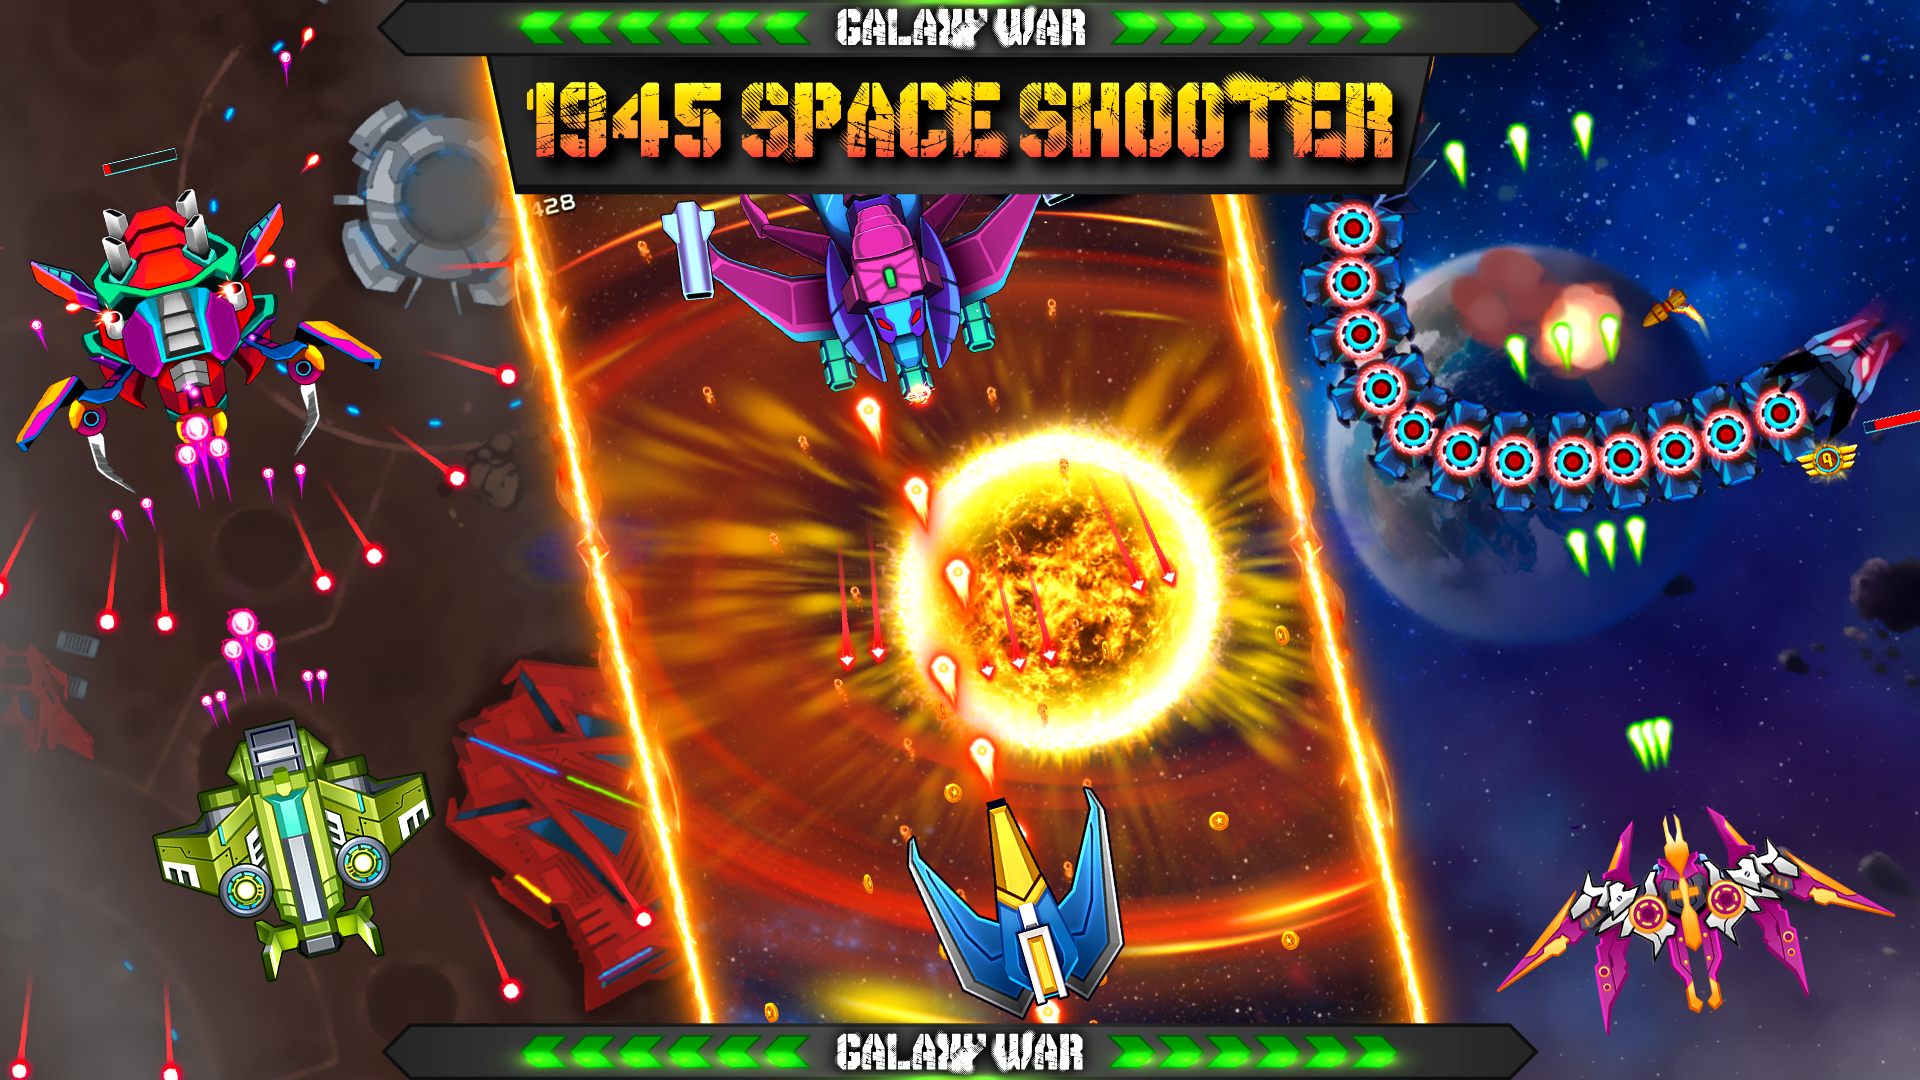 Galaxy War 1945 Space Shooter 게임 스크린 샷